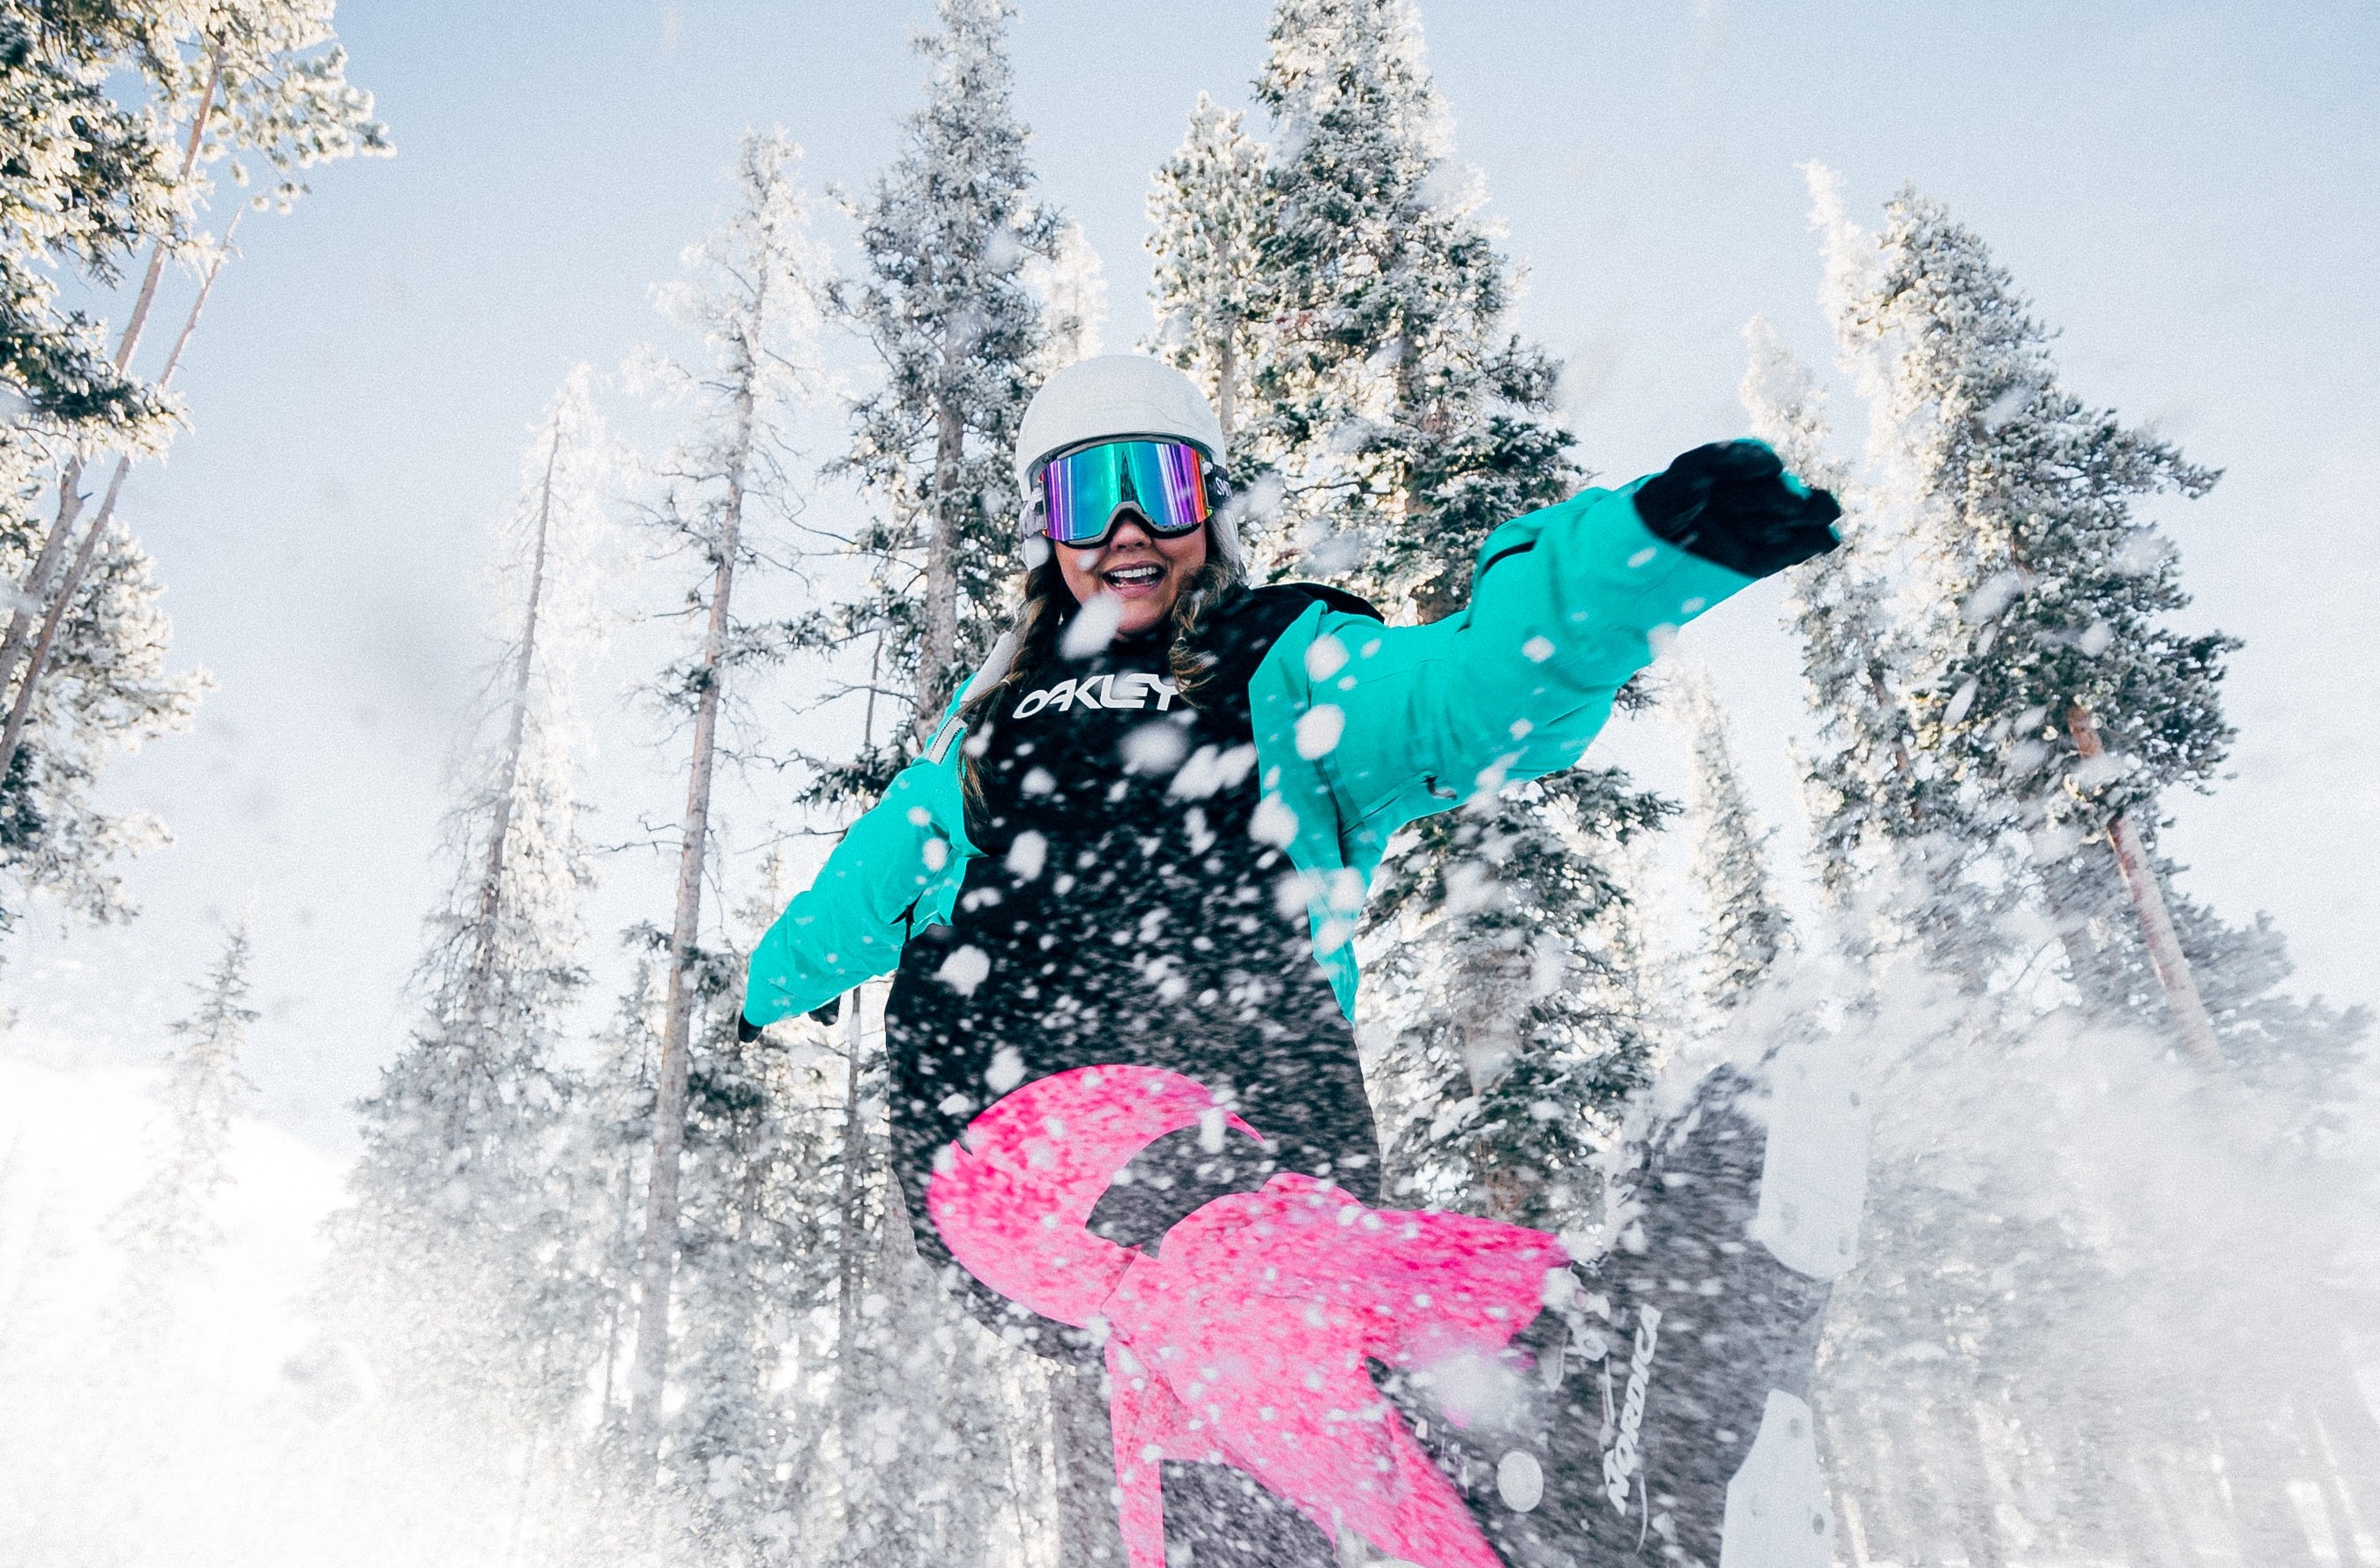 Esquí o snowboard? La elección para principiantes